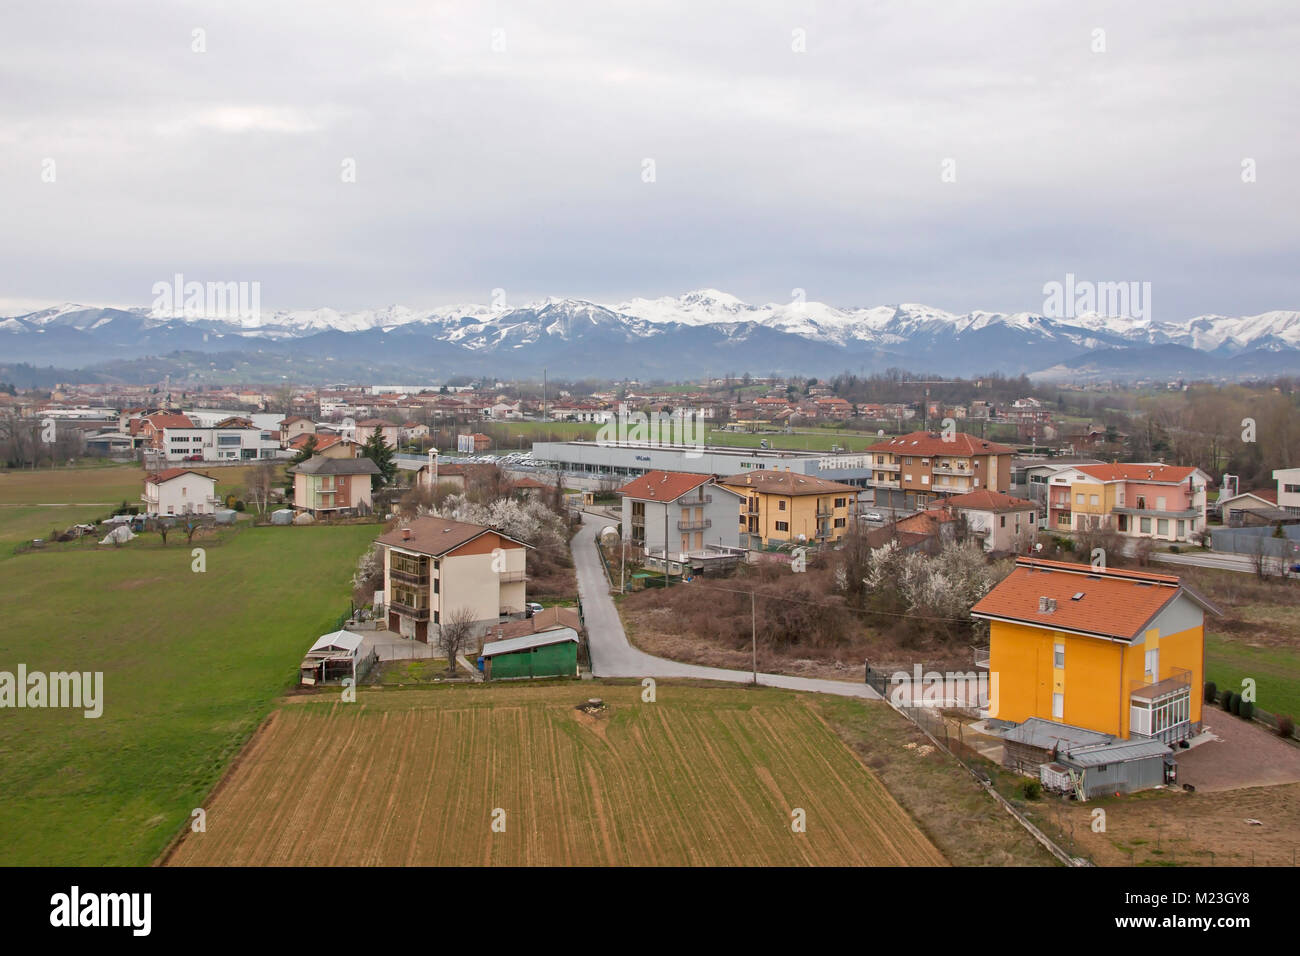 Vue depuis un ballon à air chaud de l'agence de voiture de service Valuato à Mondovi, province de Coni, Piémont, Italie, avec les Alpes derrière Banque D'Images